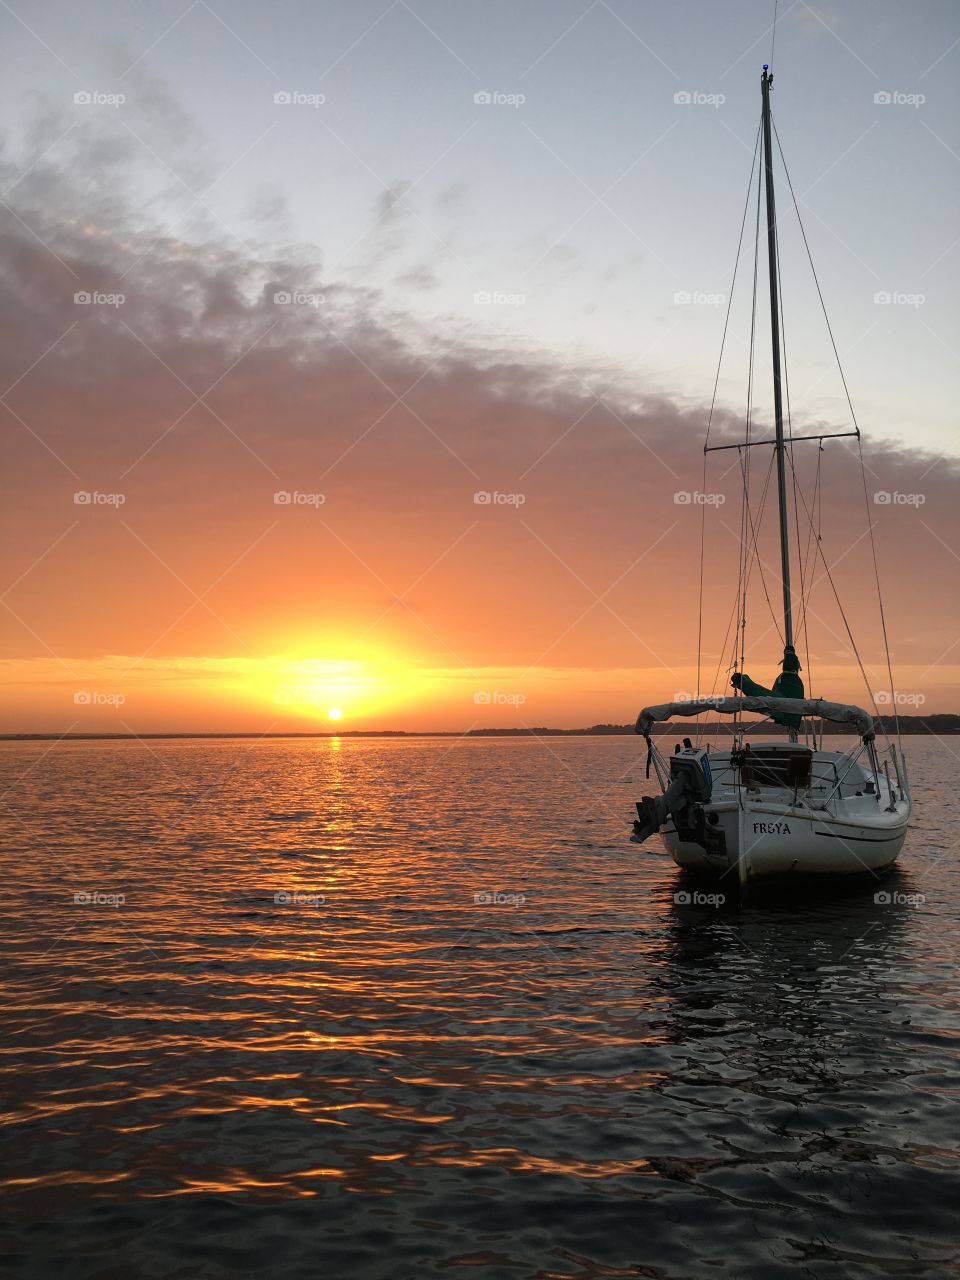 Sunset, Water, Sea, Ocean, Sailboat